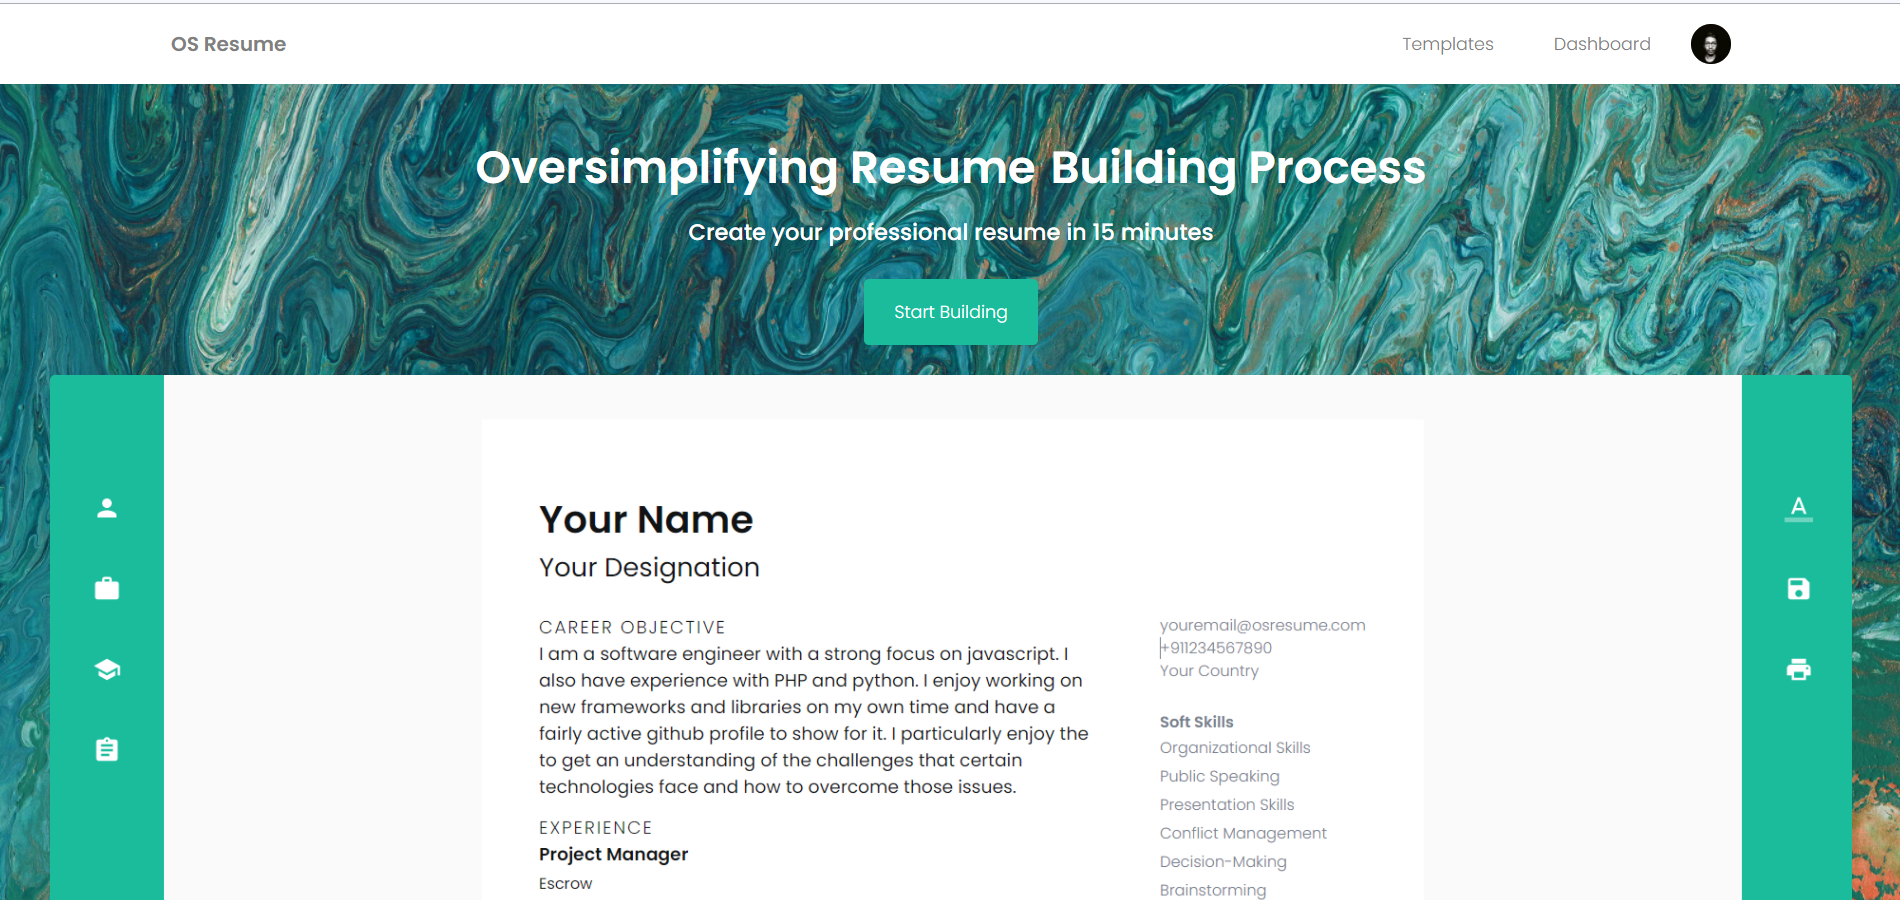 OS Resume Landing Page